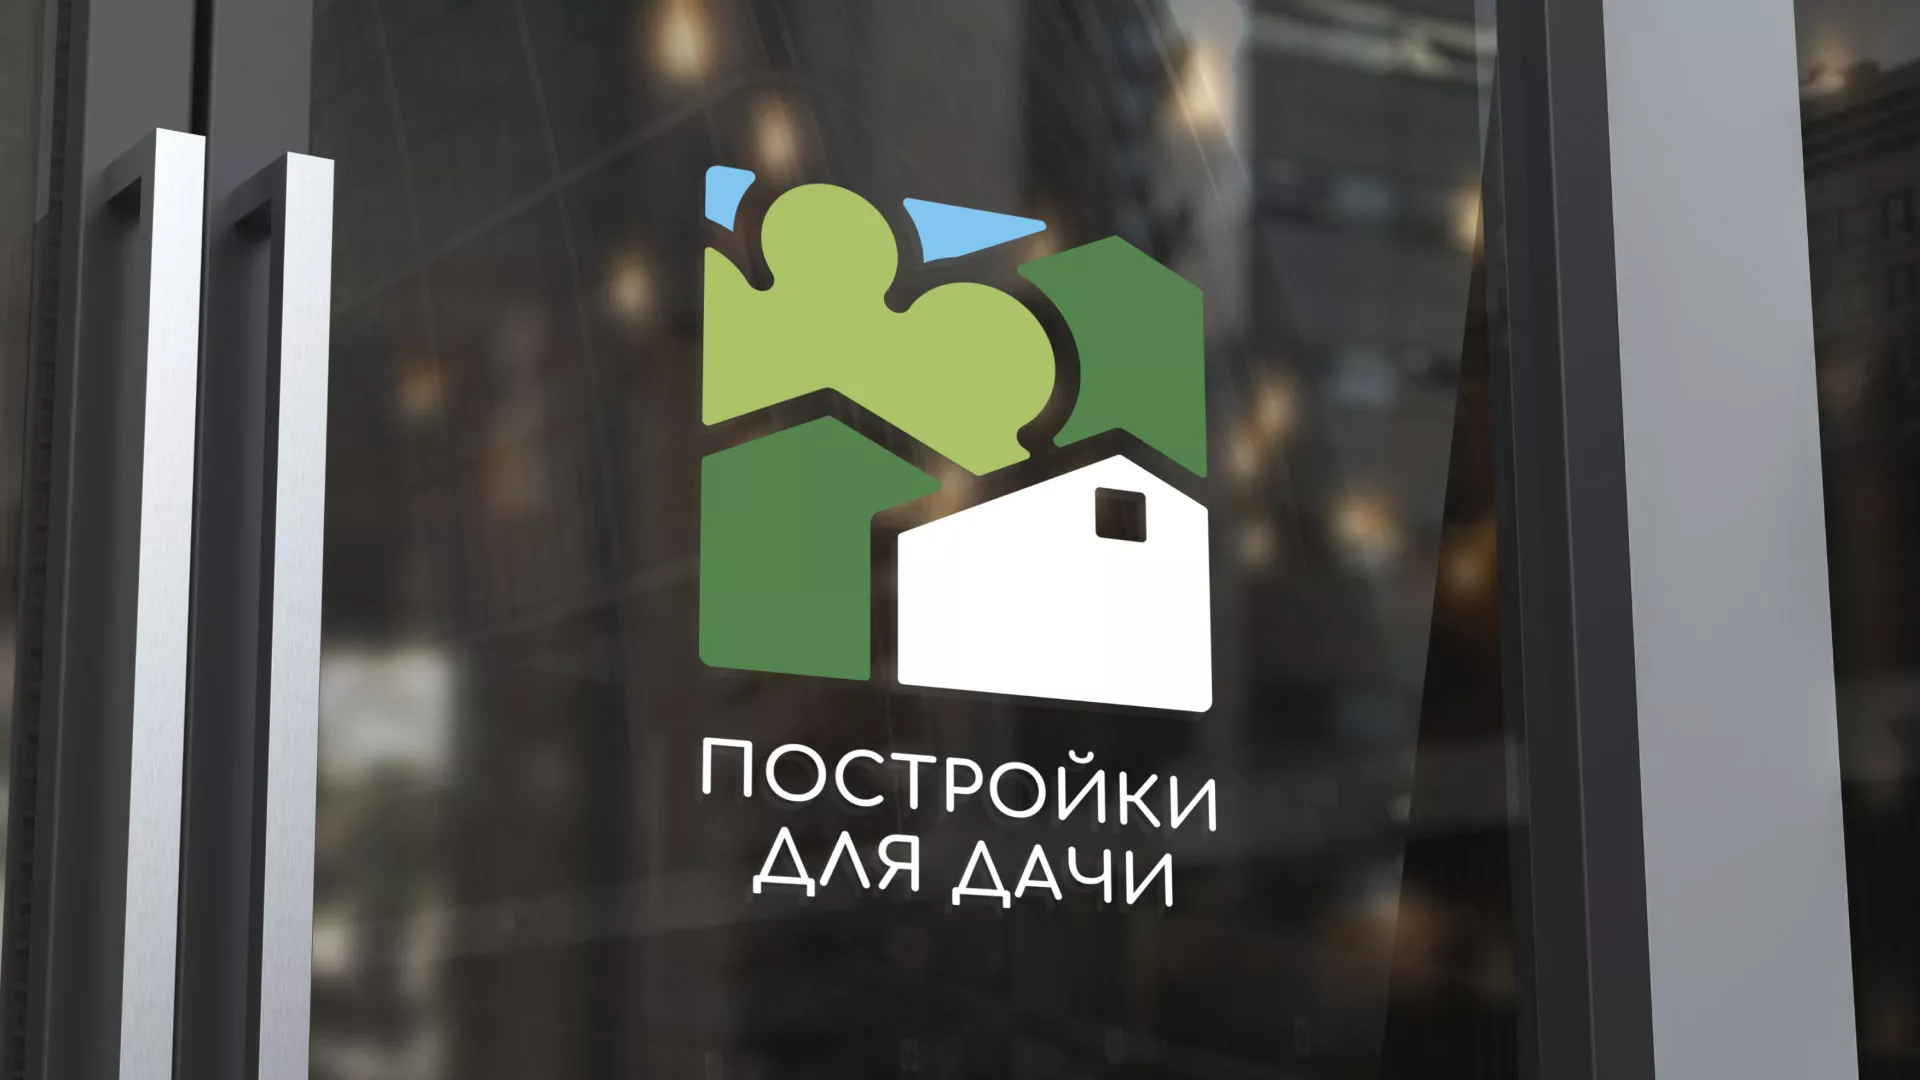 Разработка логотипа в Обнинске для компании «Постройки для дачи»